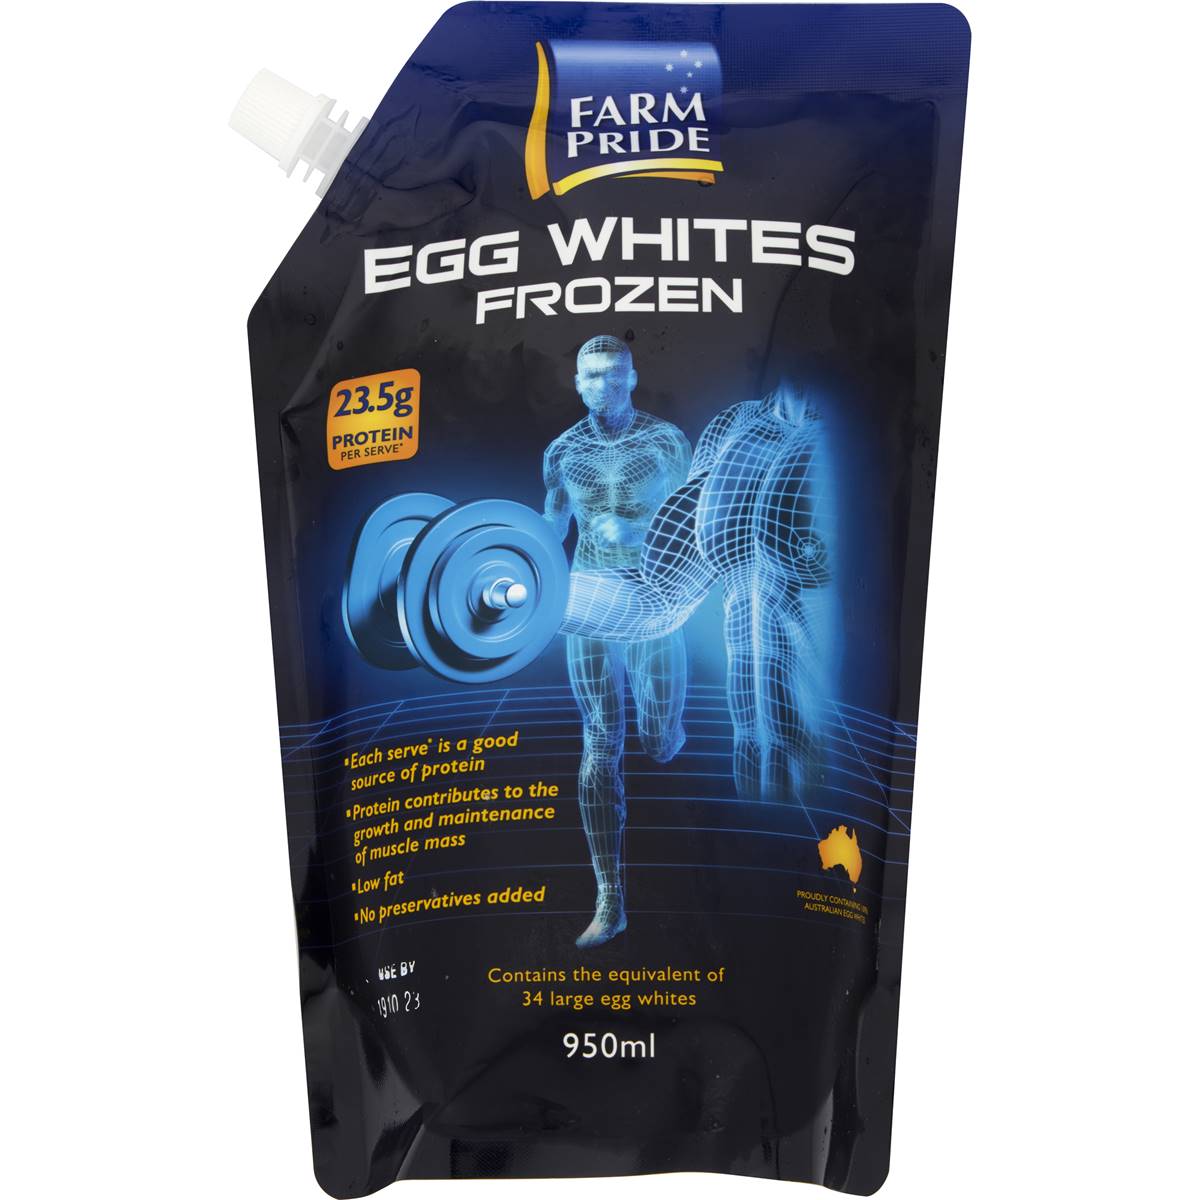 Farm Pride Frozen Egg Whites 950ml